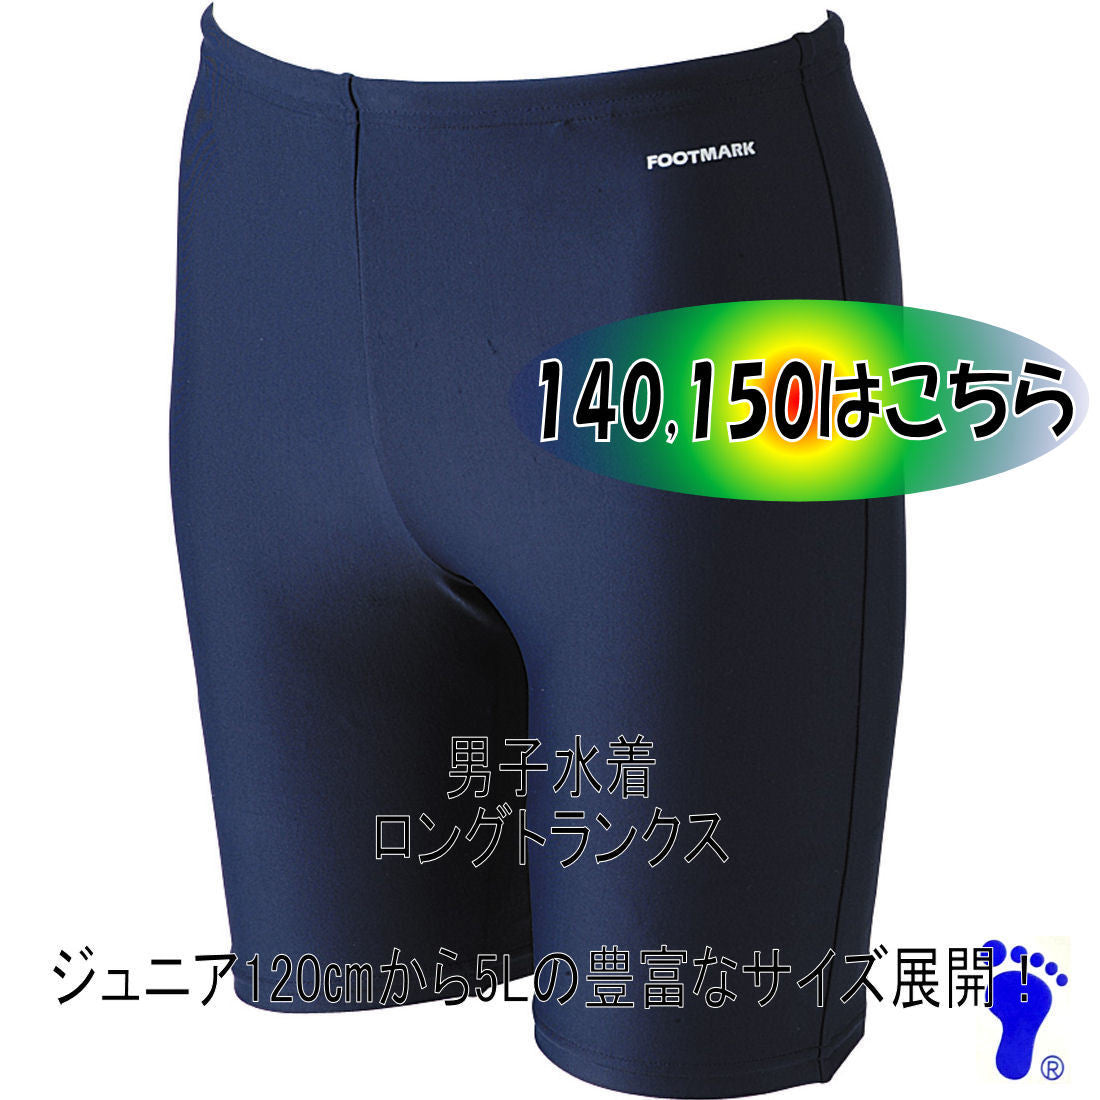 【フットマーク】ロングトランクス 140・150サイズ ネイビー 紺 競泳型 男子男児用